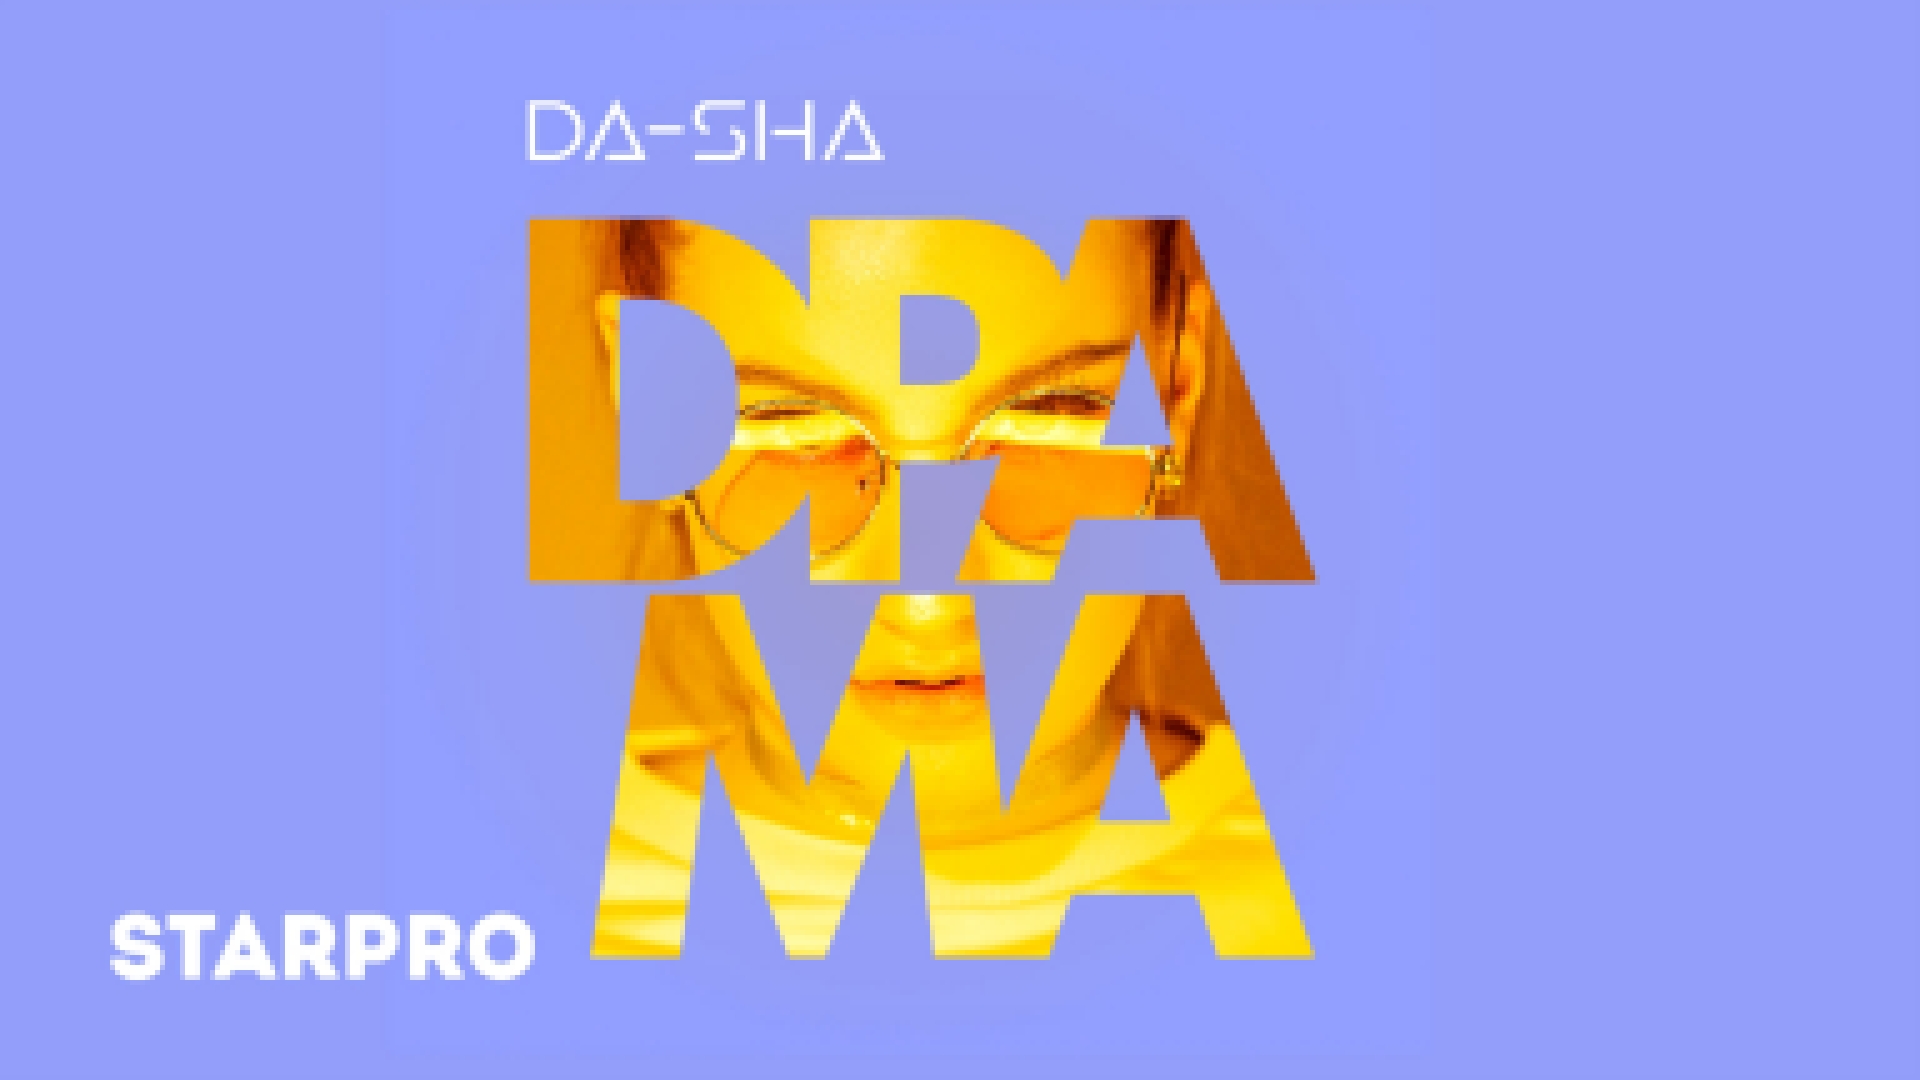 Da-sha - Драма [Премьера клипа, 2018] - видеоклип на песню